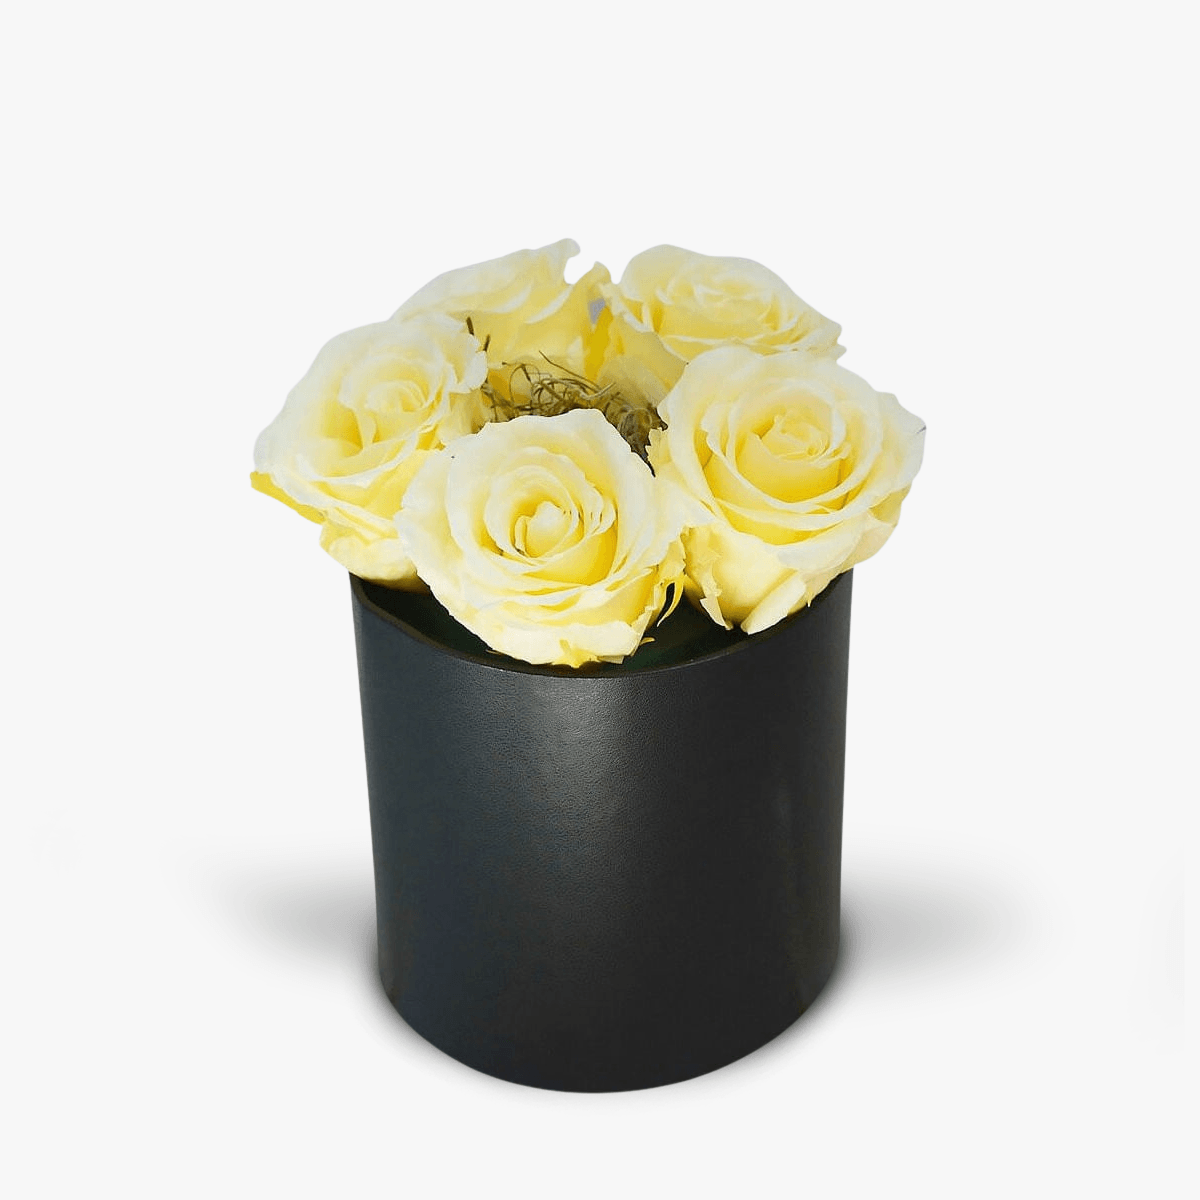 Cutie cu 5 trandafiri albi, criogenati – Standard albi